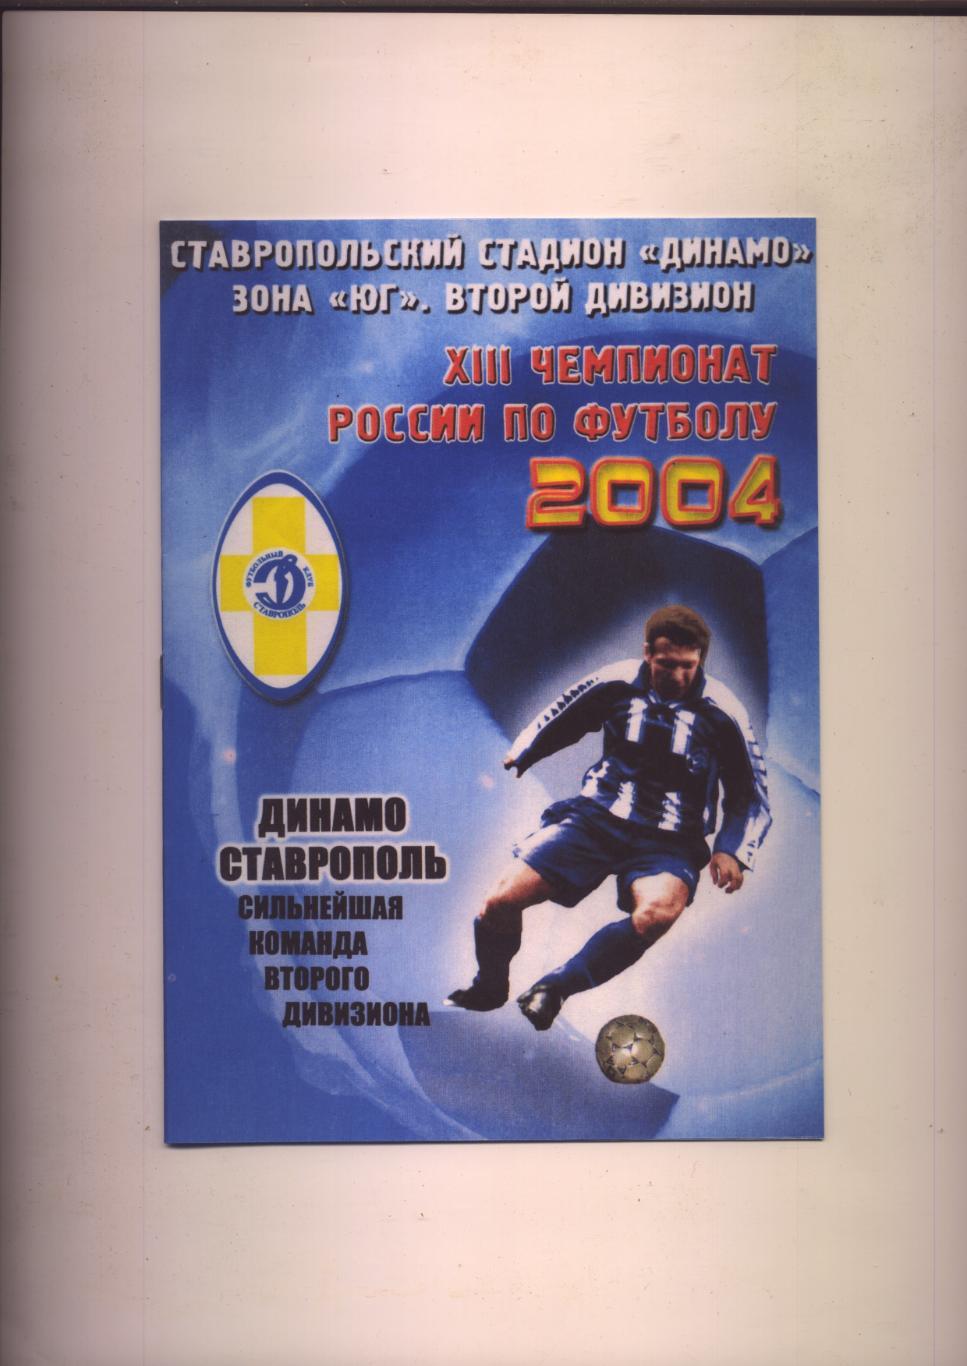 Футбол ФотоБуклет Динамо Ставрополь сильнейшая команда второго дивизиона 2004